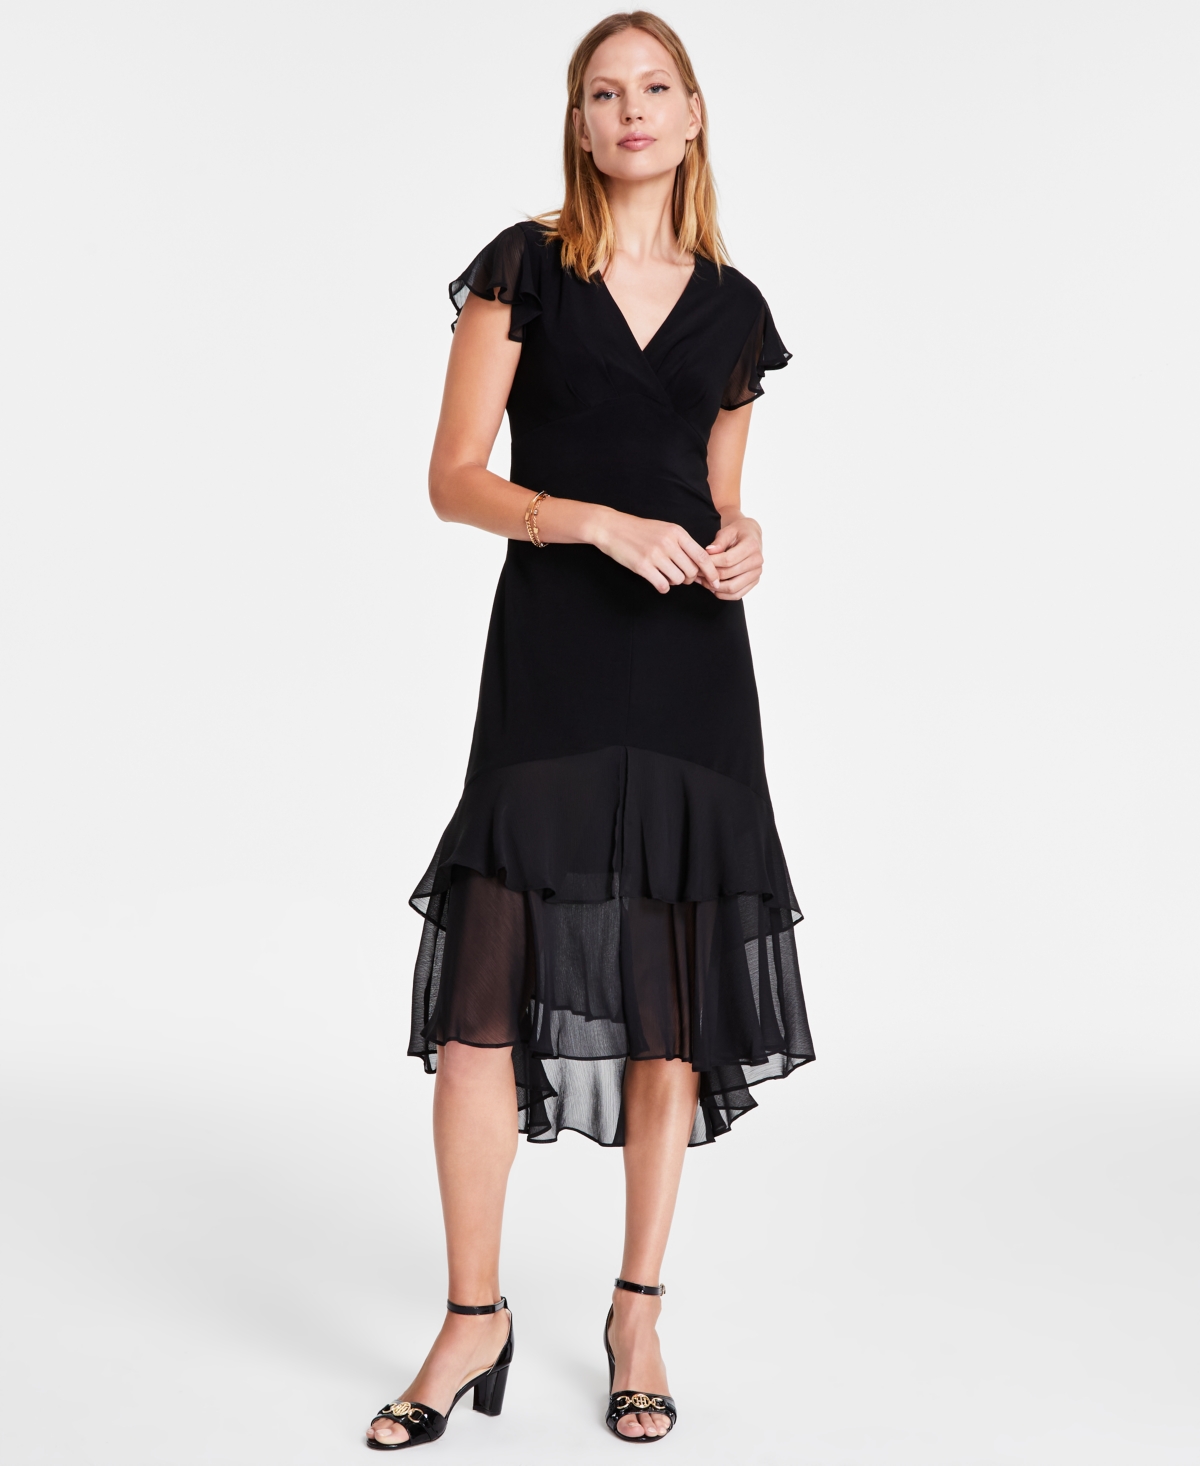 Buy Boardwalk Empire Inspired Dresses Tommy Hilfiger Womens V-Neck How-Low Hem Chiffon-Trim Dress $83.30 AT vintagedancer.com